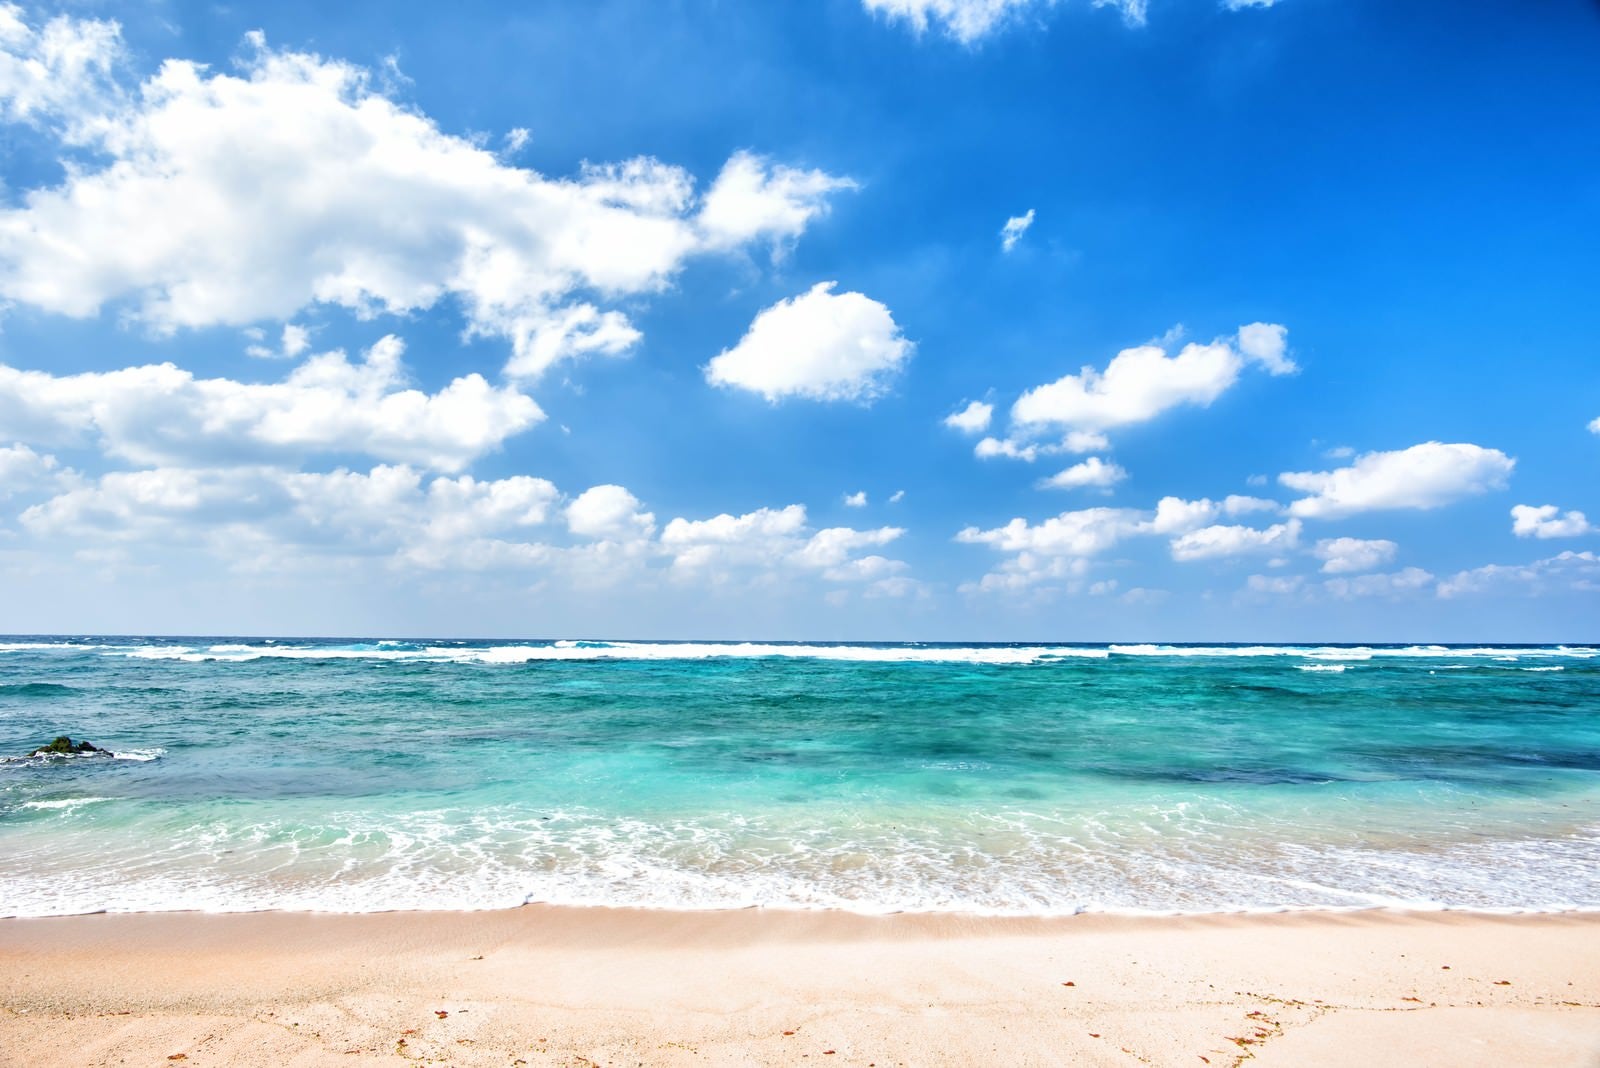 「青い空とエメラルドグリーンの海」の写真